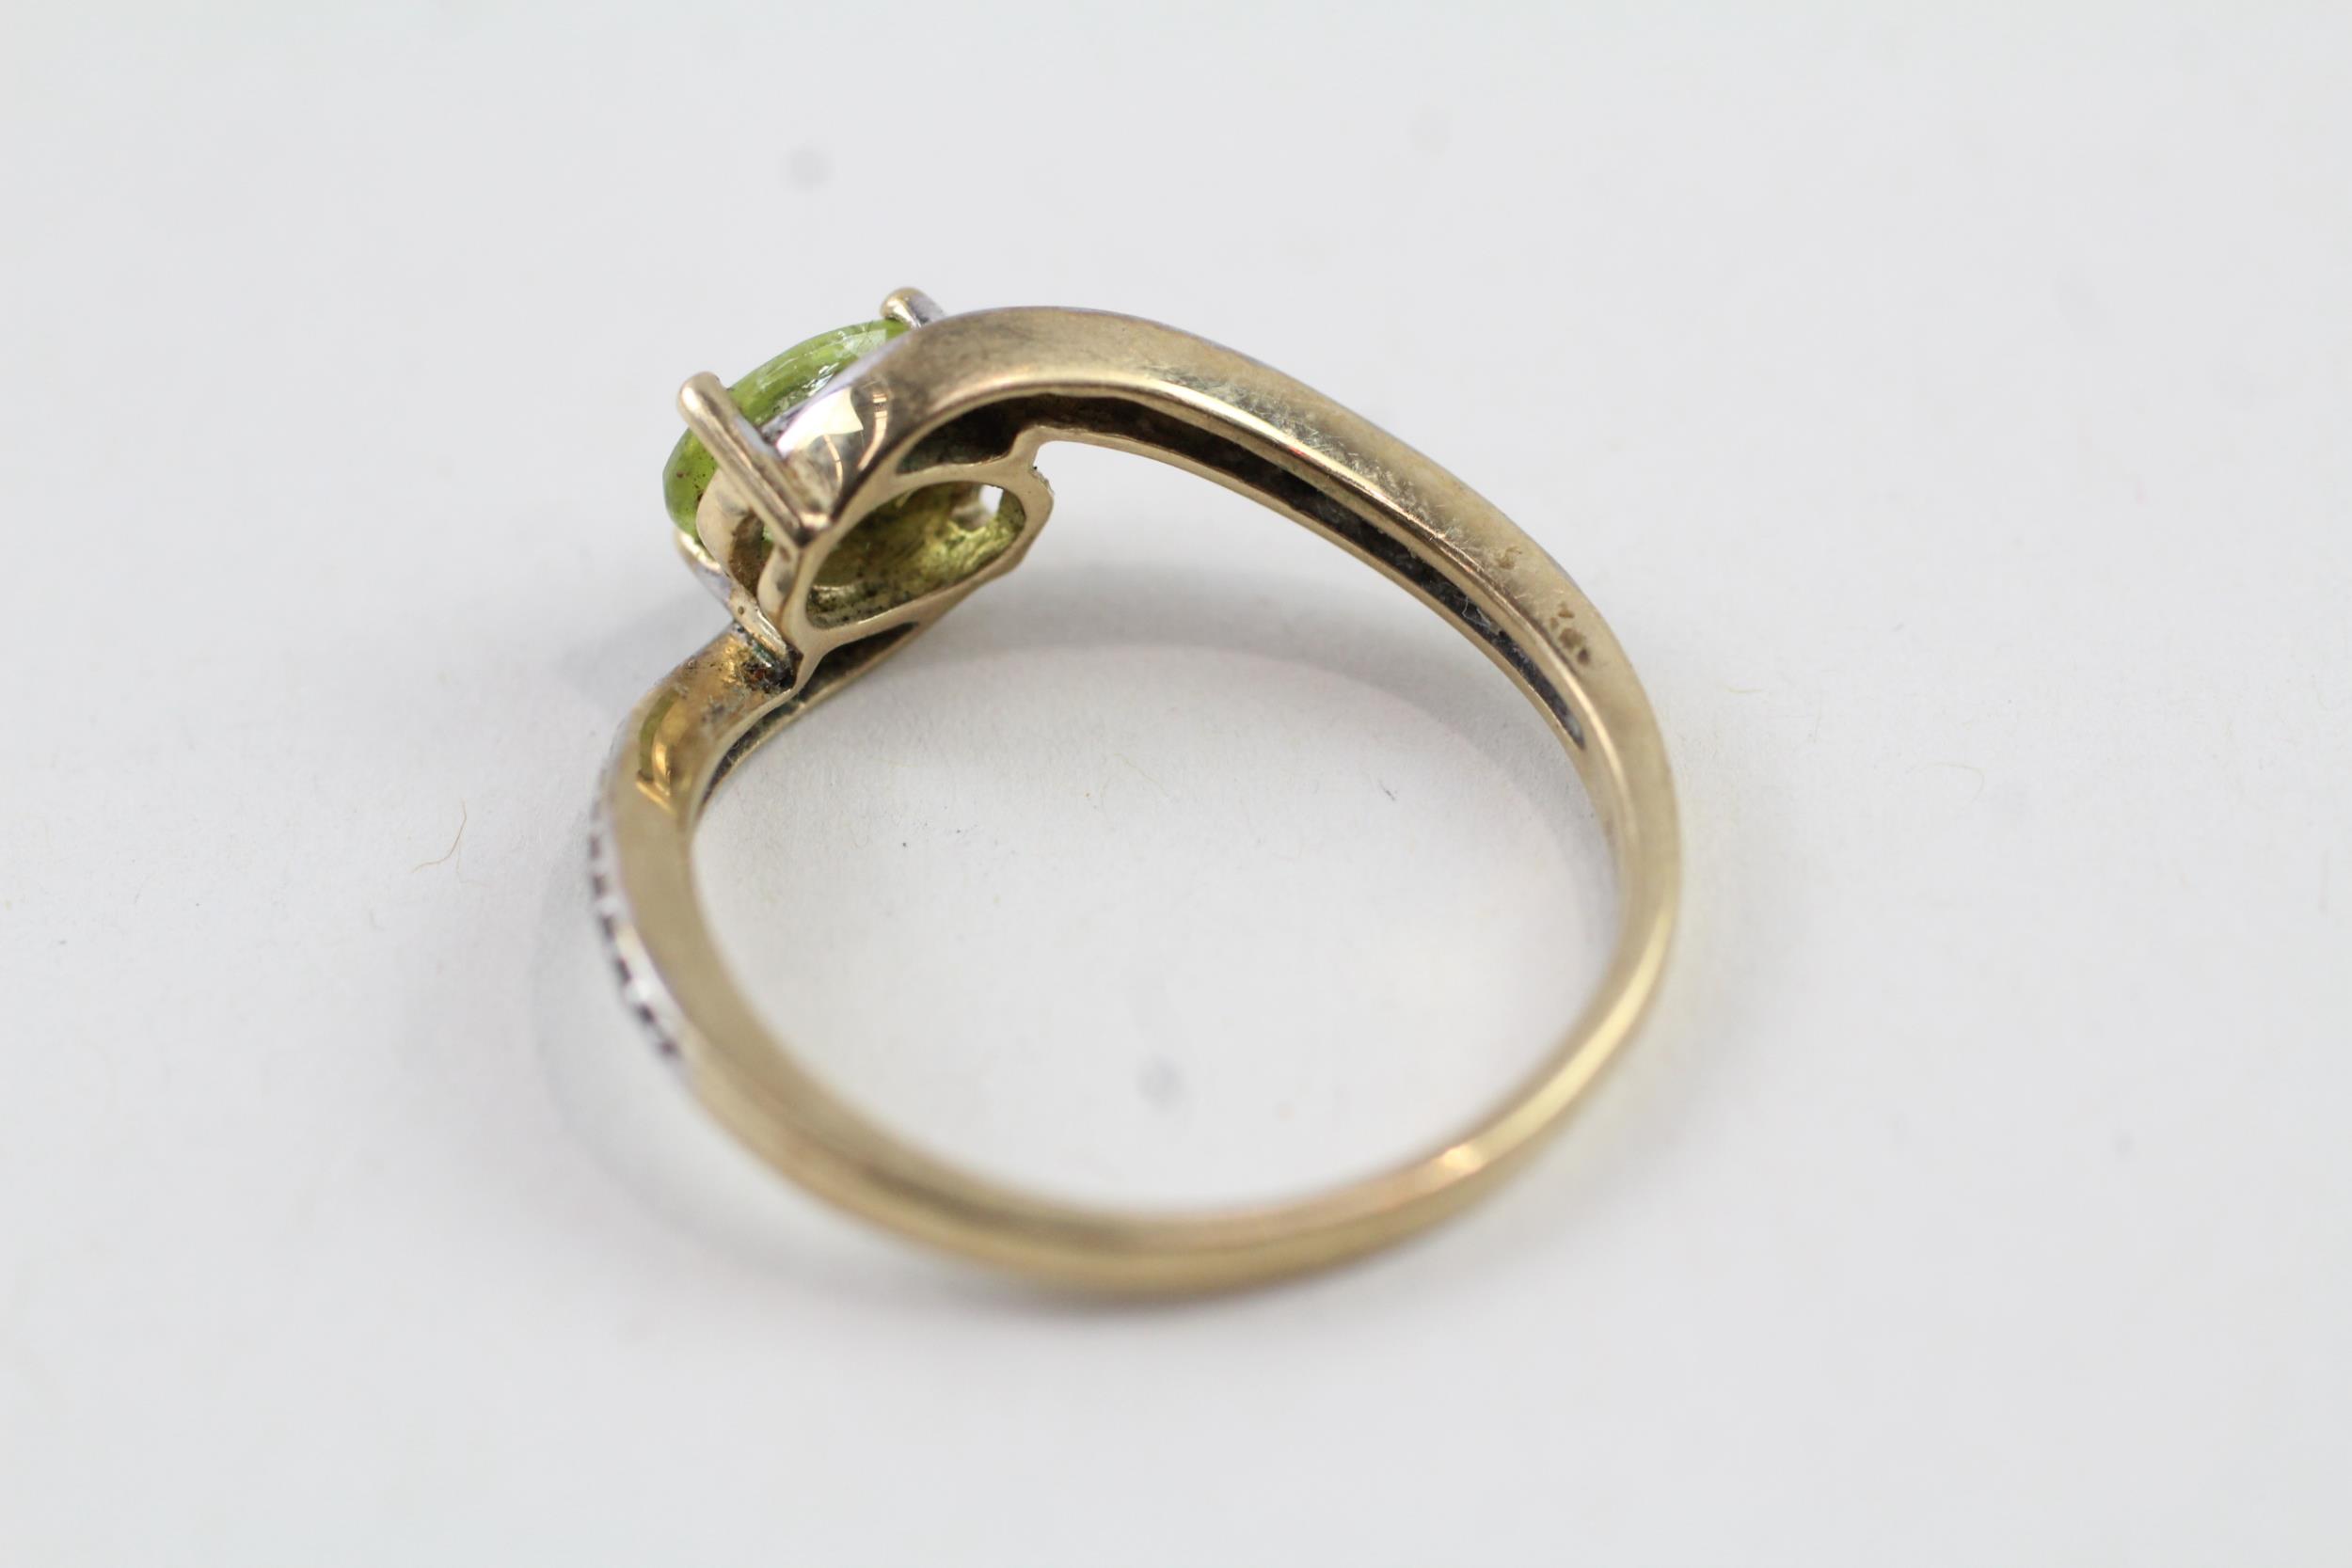 9ct gold oval cut peridot & diamond dress ring (2.3g) Size Q - Image 3 of 6